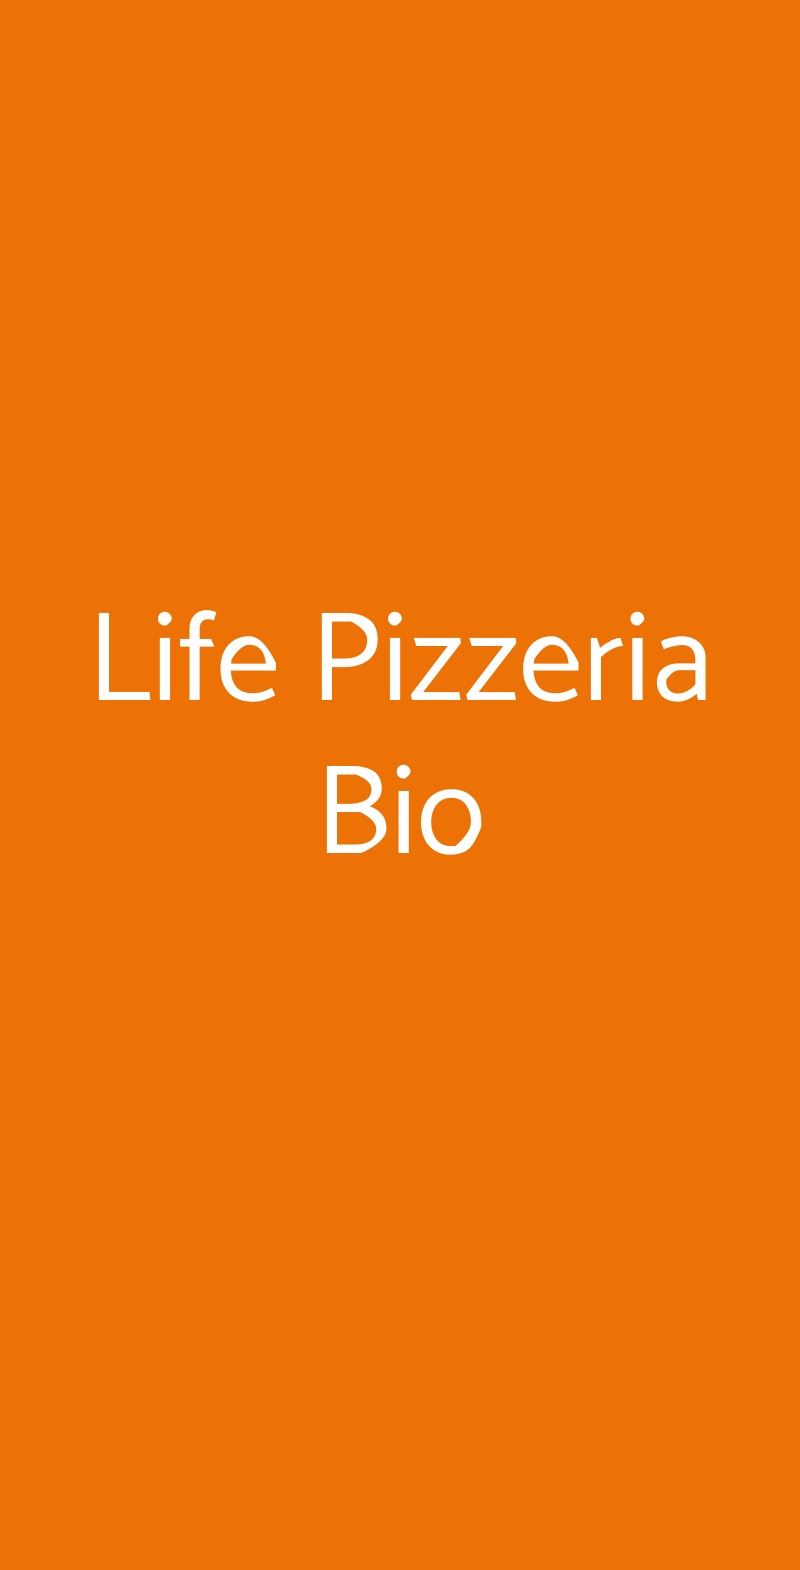 Life Pizzeria Bio Roma menù 1 pagina